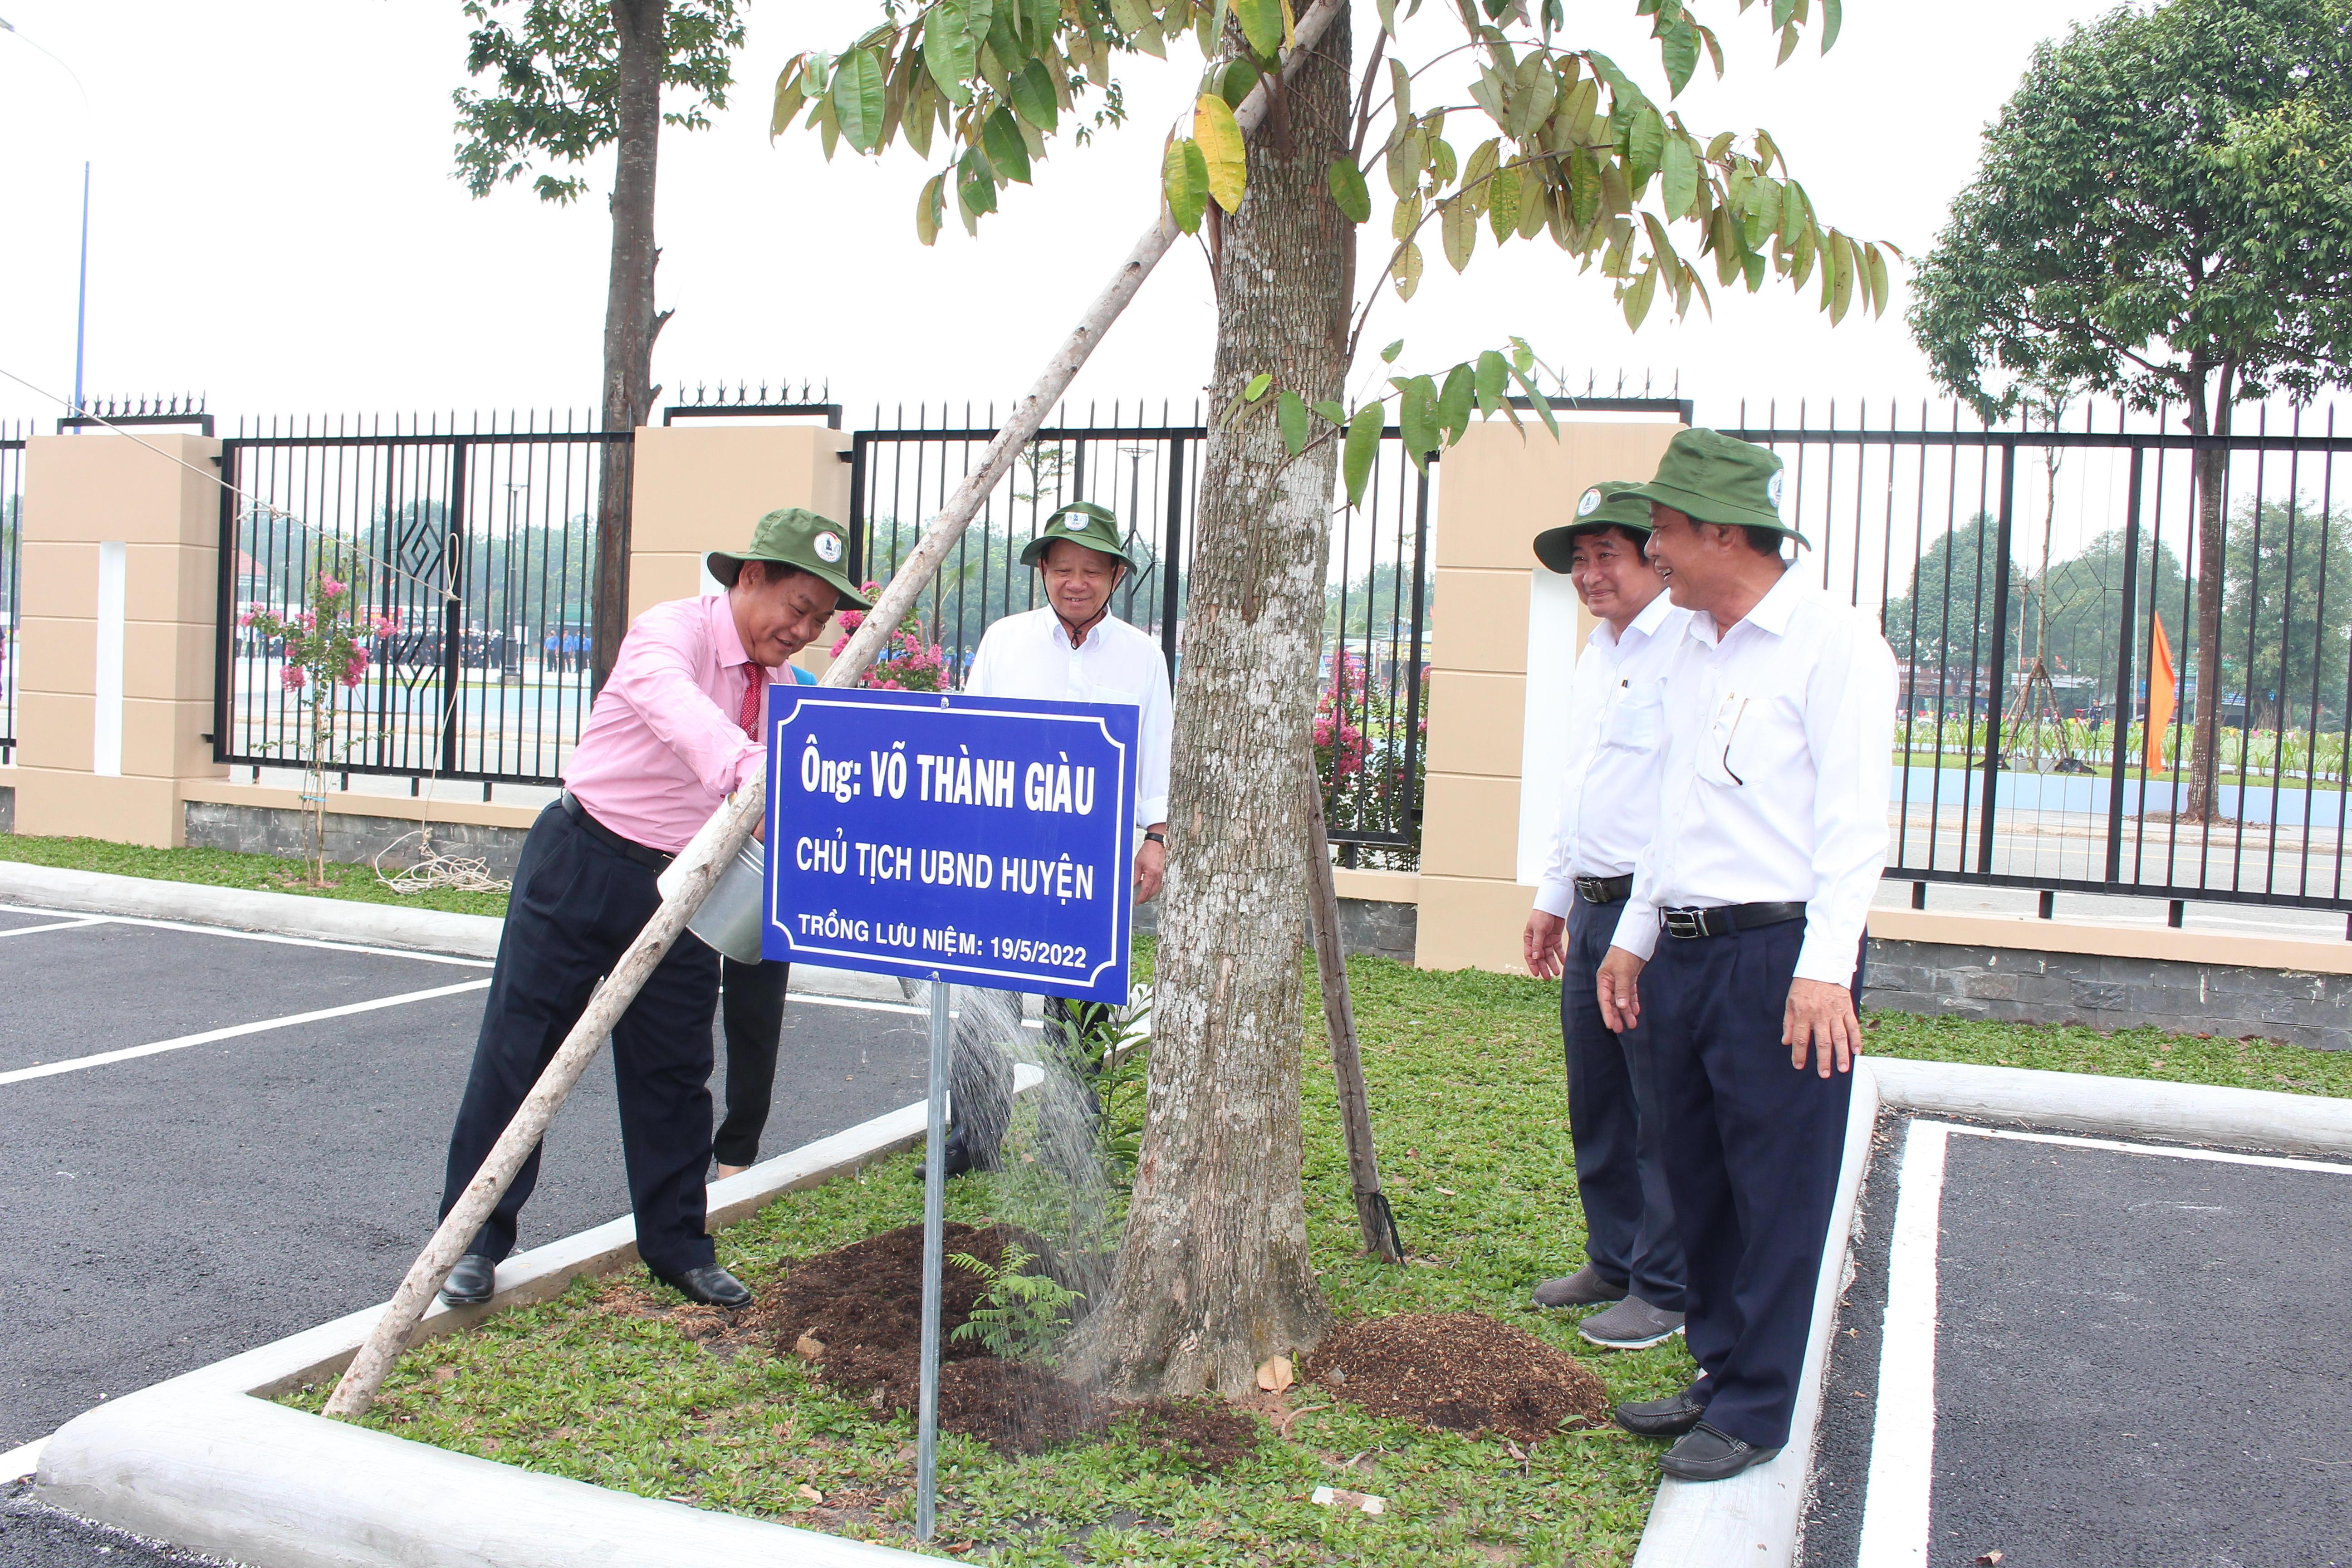 Ông Võ Thành Giàu - chủ tịch UBND huyện tham gia trồng cây xanh trong khuôn viên Tòa nhà Trung tâm Hành chính huyện Bàu Bàng.